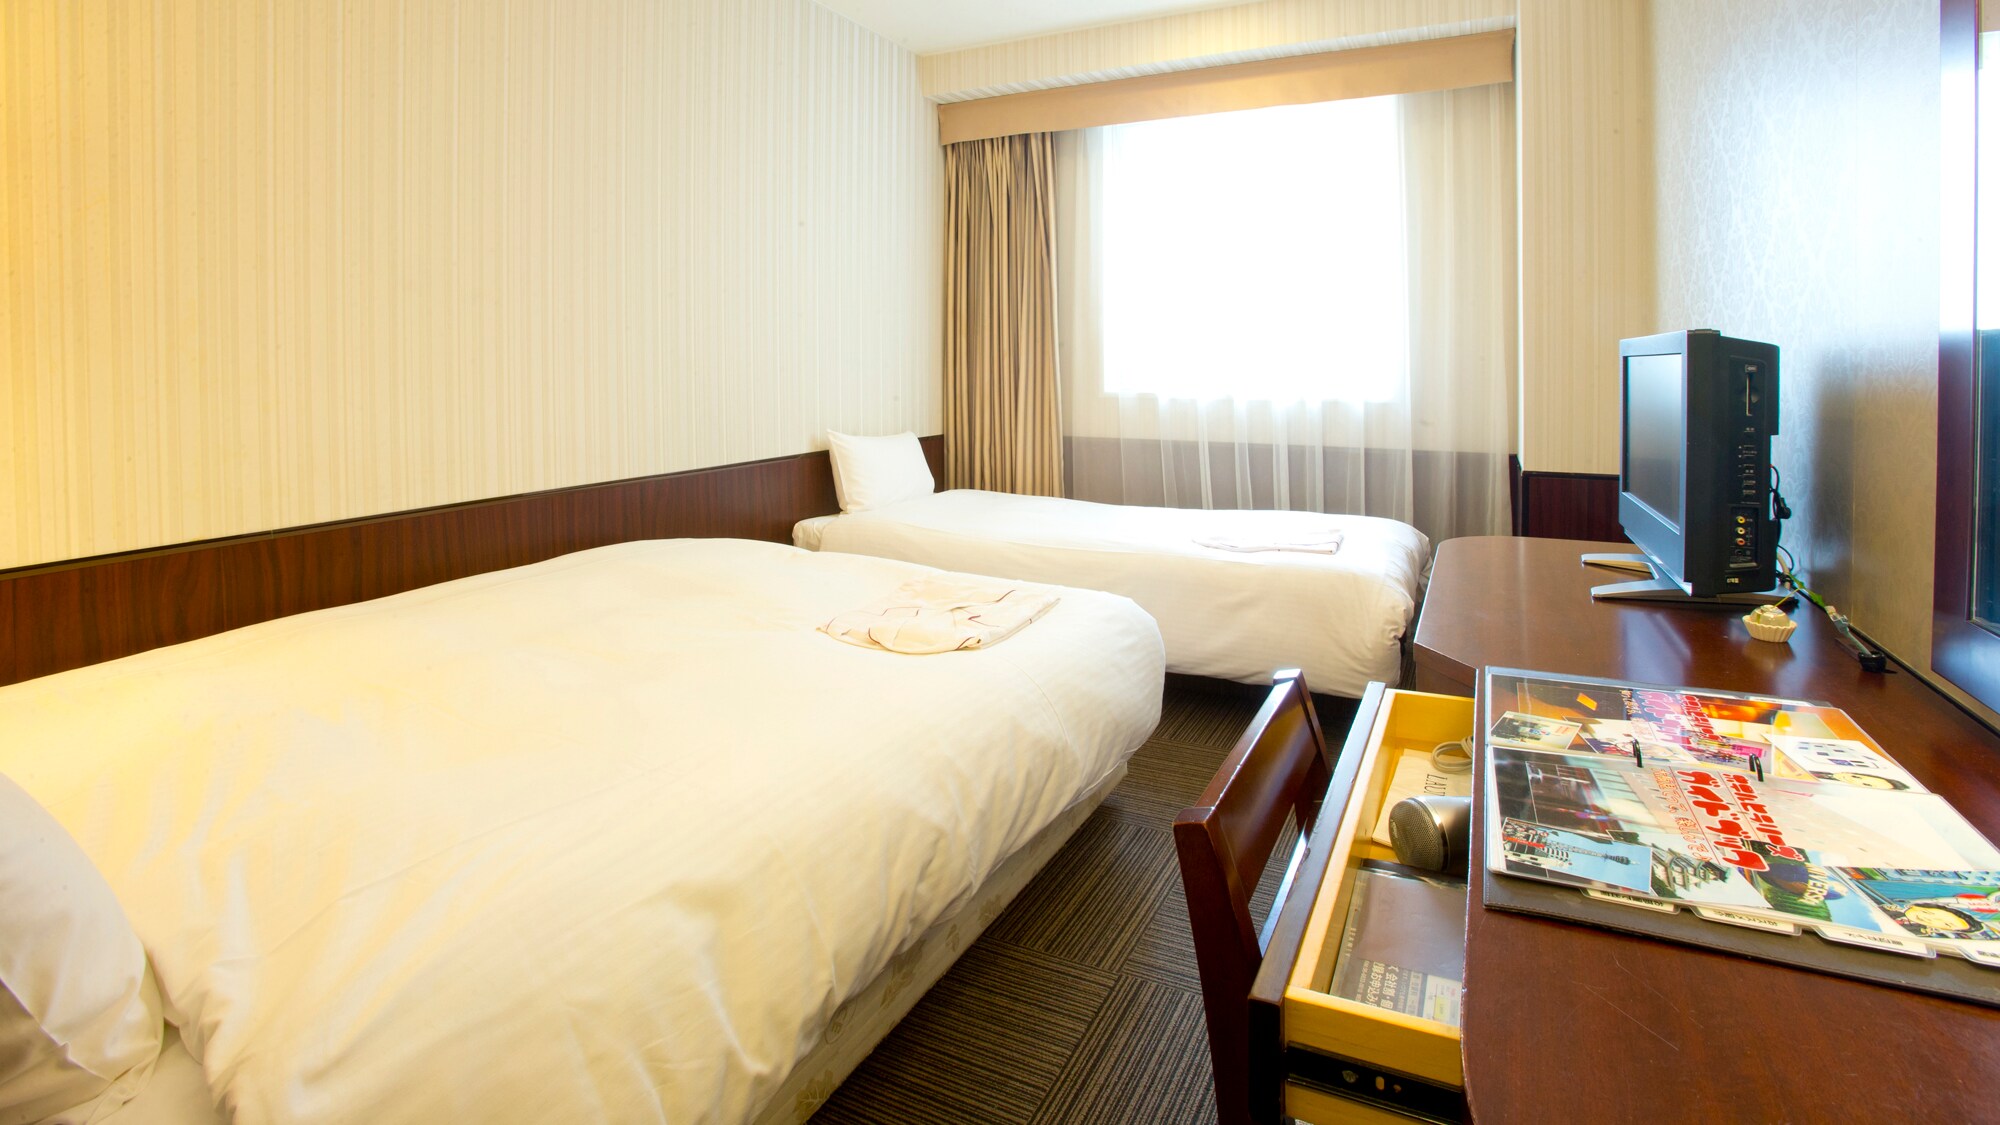 Kamar double dapat menampung hingga 3 orang dengan tempat tidur tambahan.